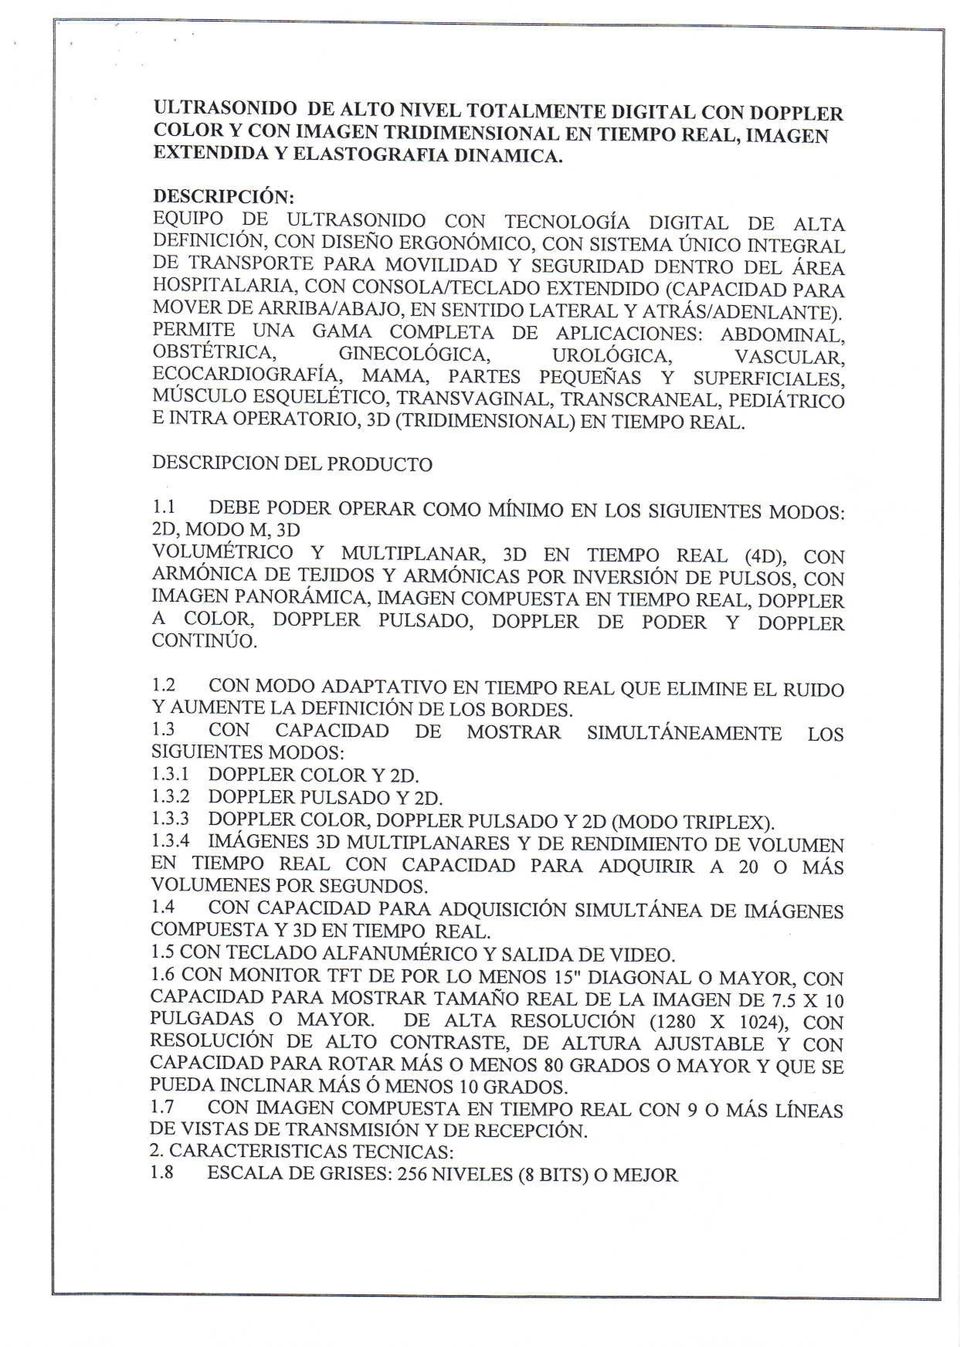 EXTENDIDO (CAPACIDAD PARA MOVER DE ARzuBA/ABAJO, EN SENTIDO LATERAL Y ATRÁS/ADENLANTE).